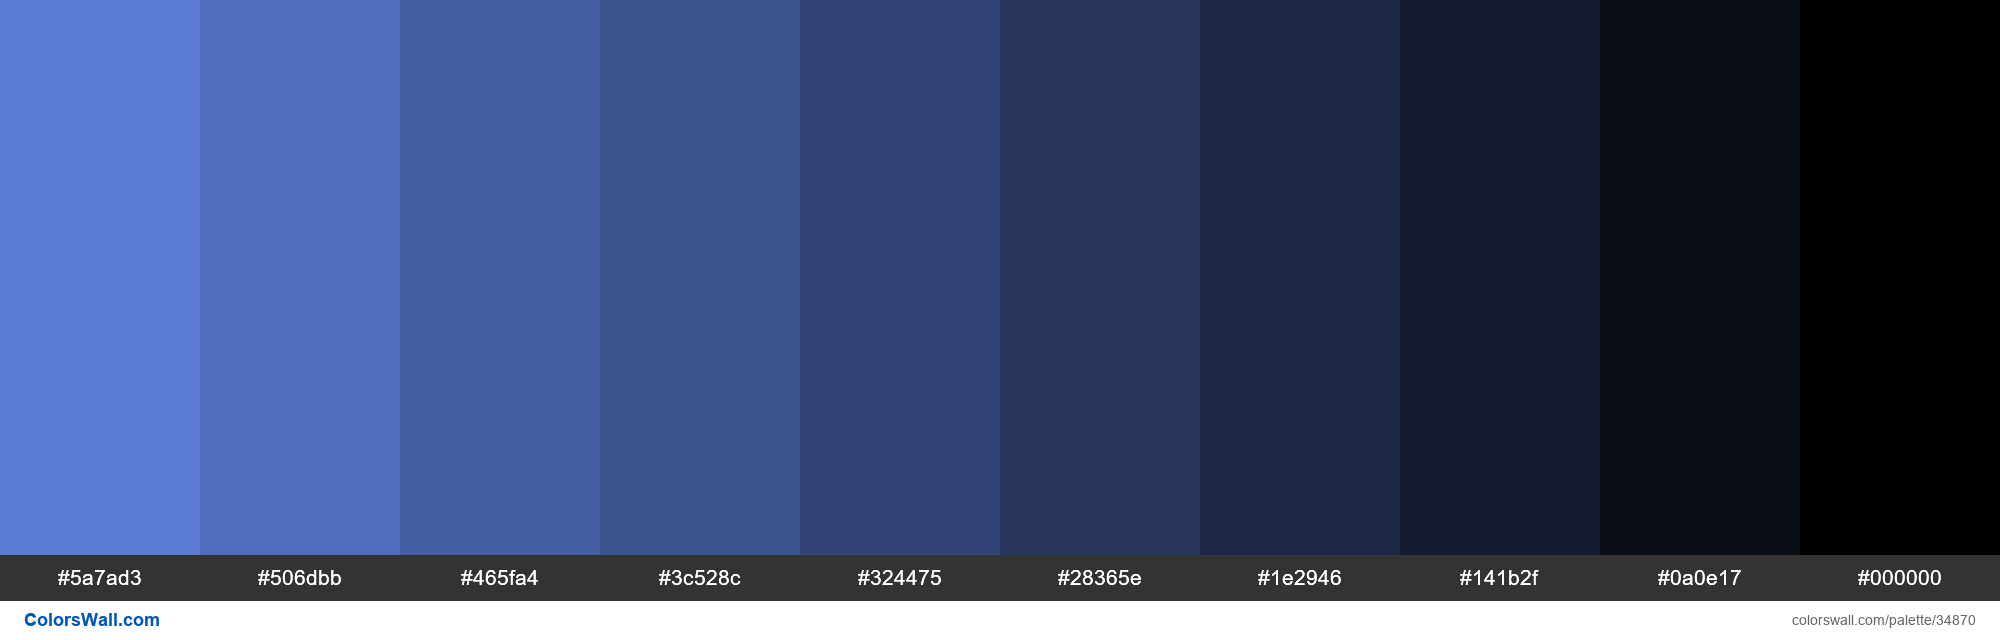 Shades XKCD Color soft blue #6488ea hex colors palette - ColorsWall